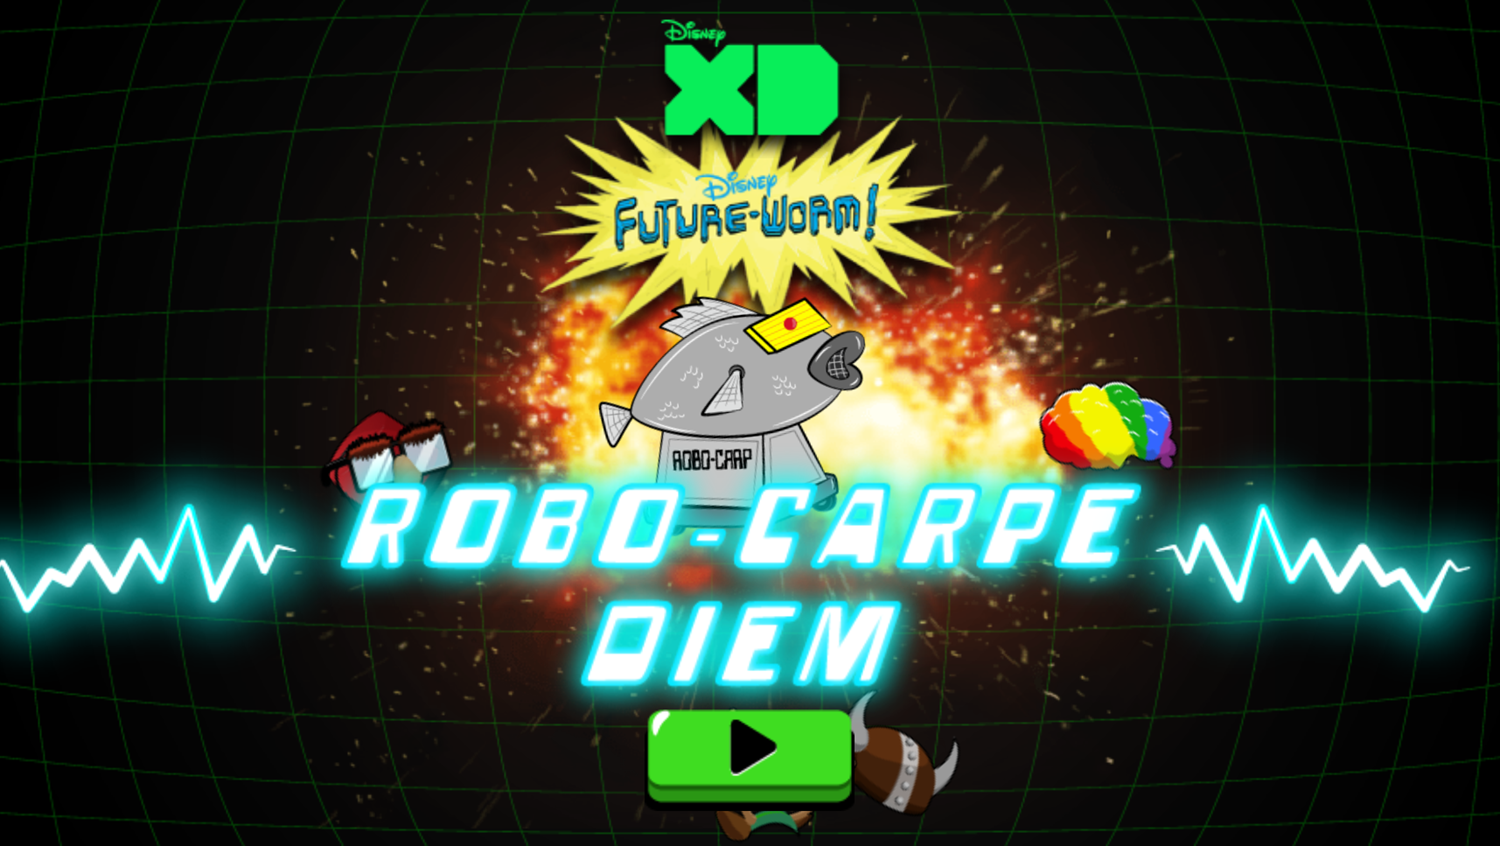 Robo-Carpe Diem Game Welcome Screen Screenshot.